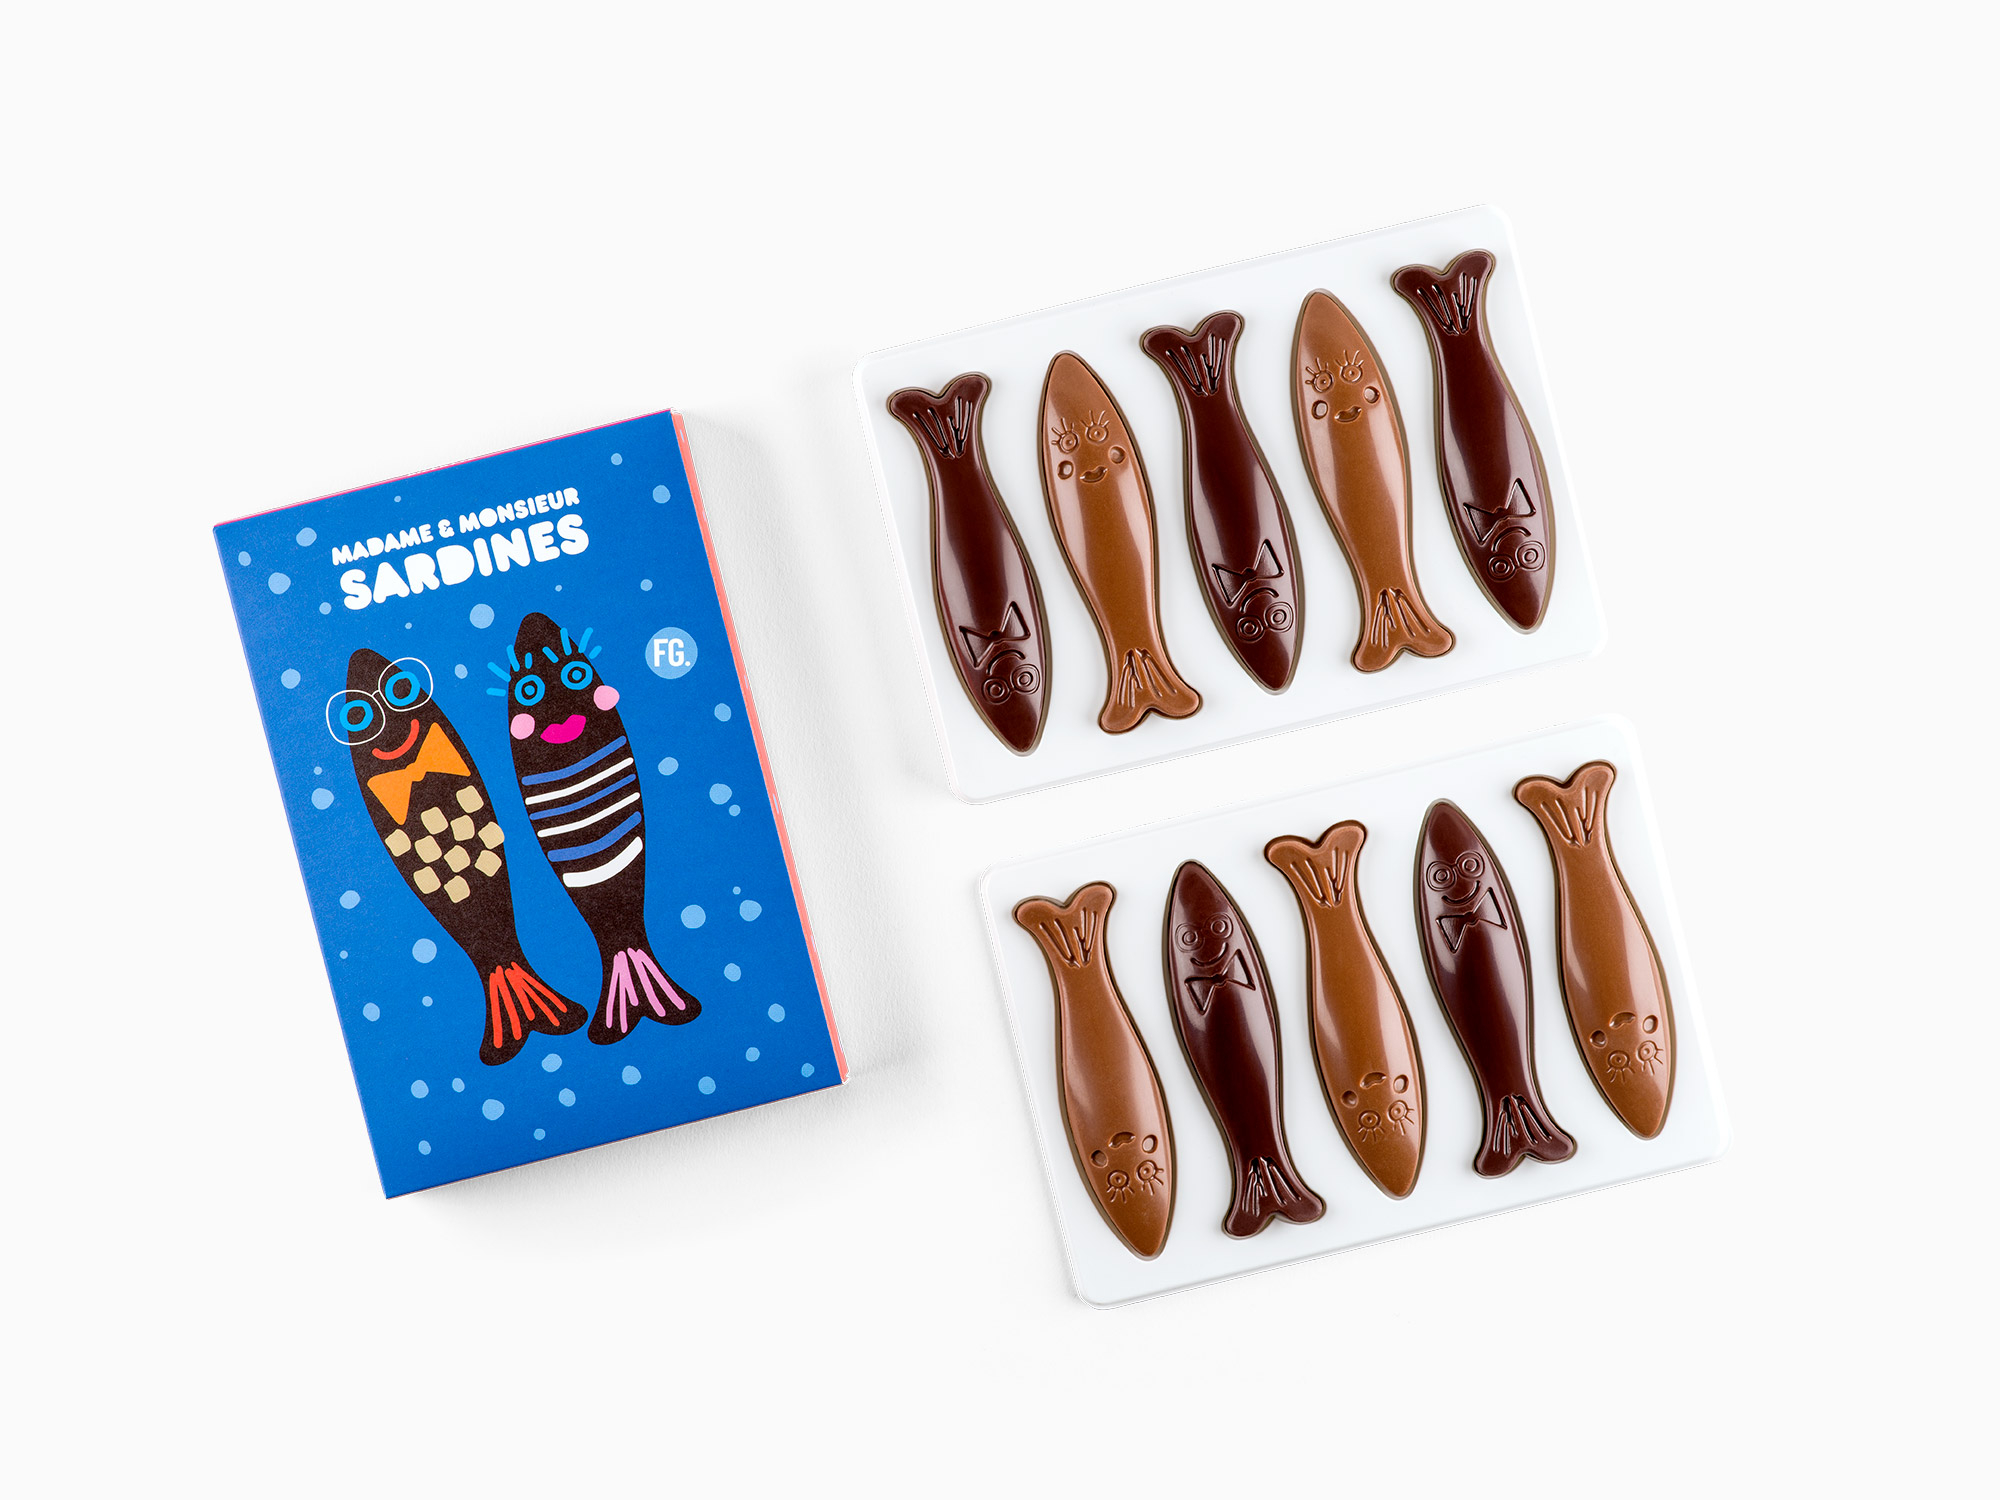 Kit de 10 sucettes - La Fabrique de Chocolat, Chocolaterie Mercier (130 g)